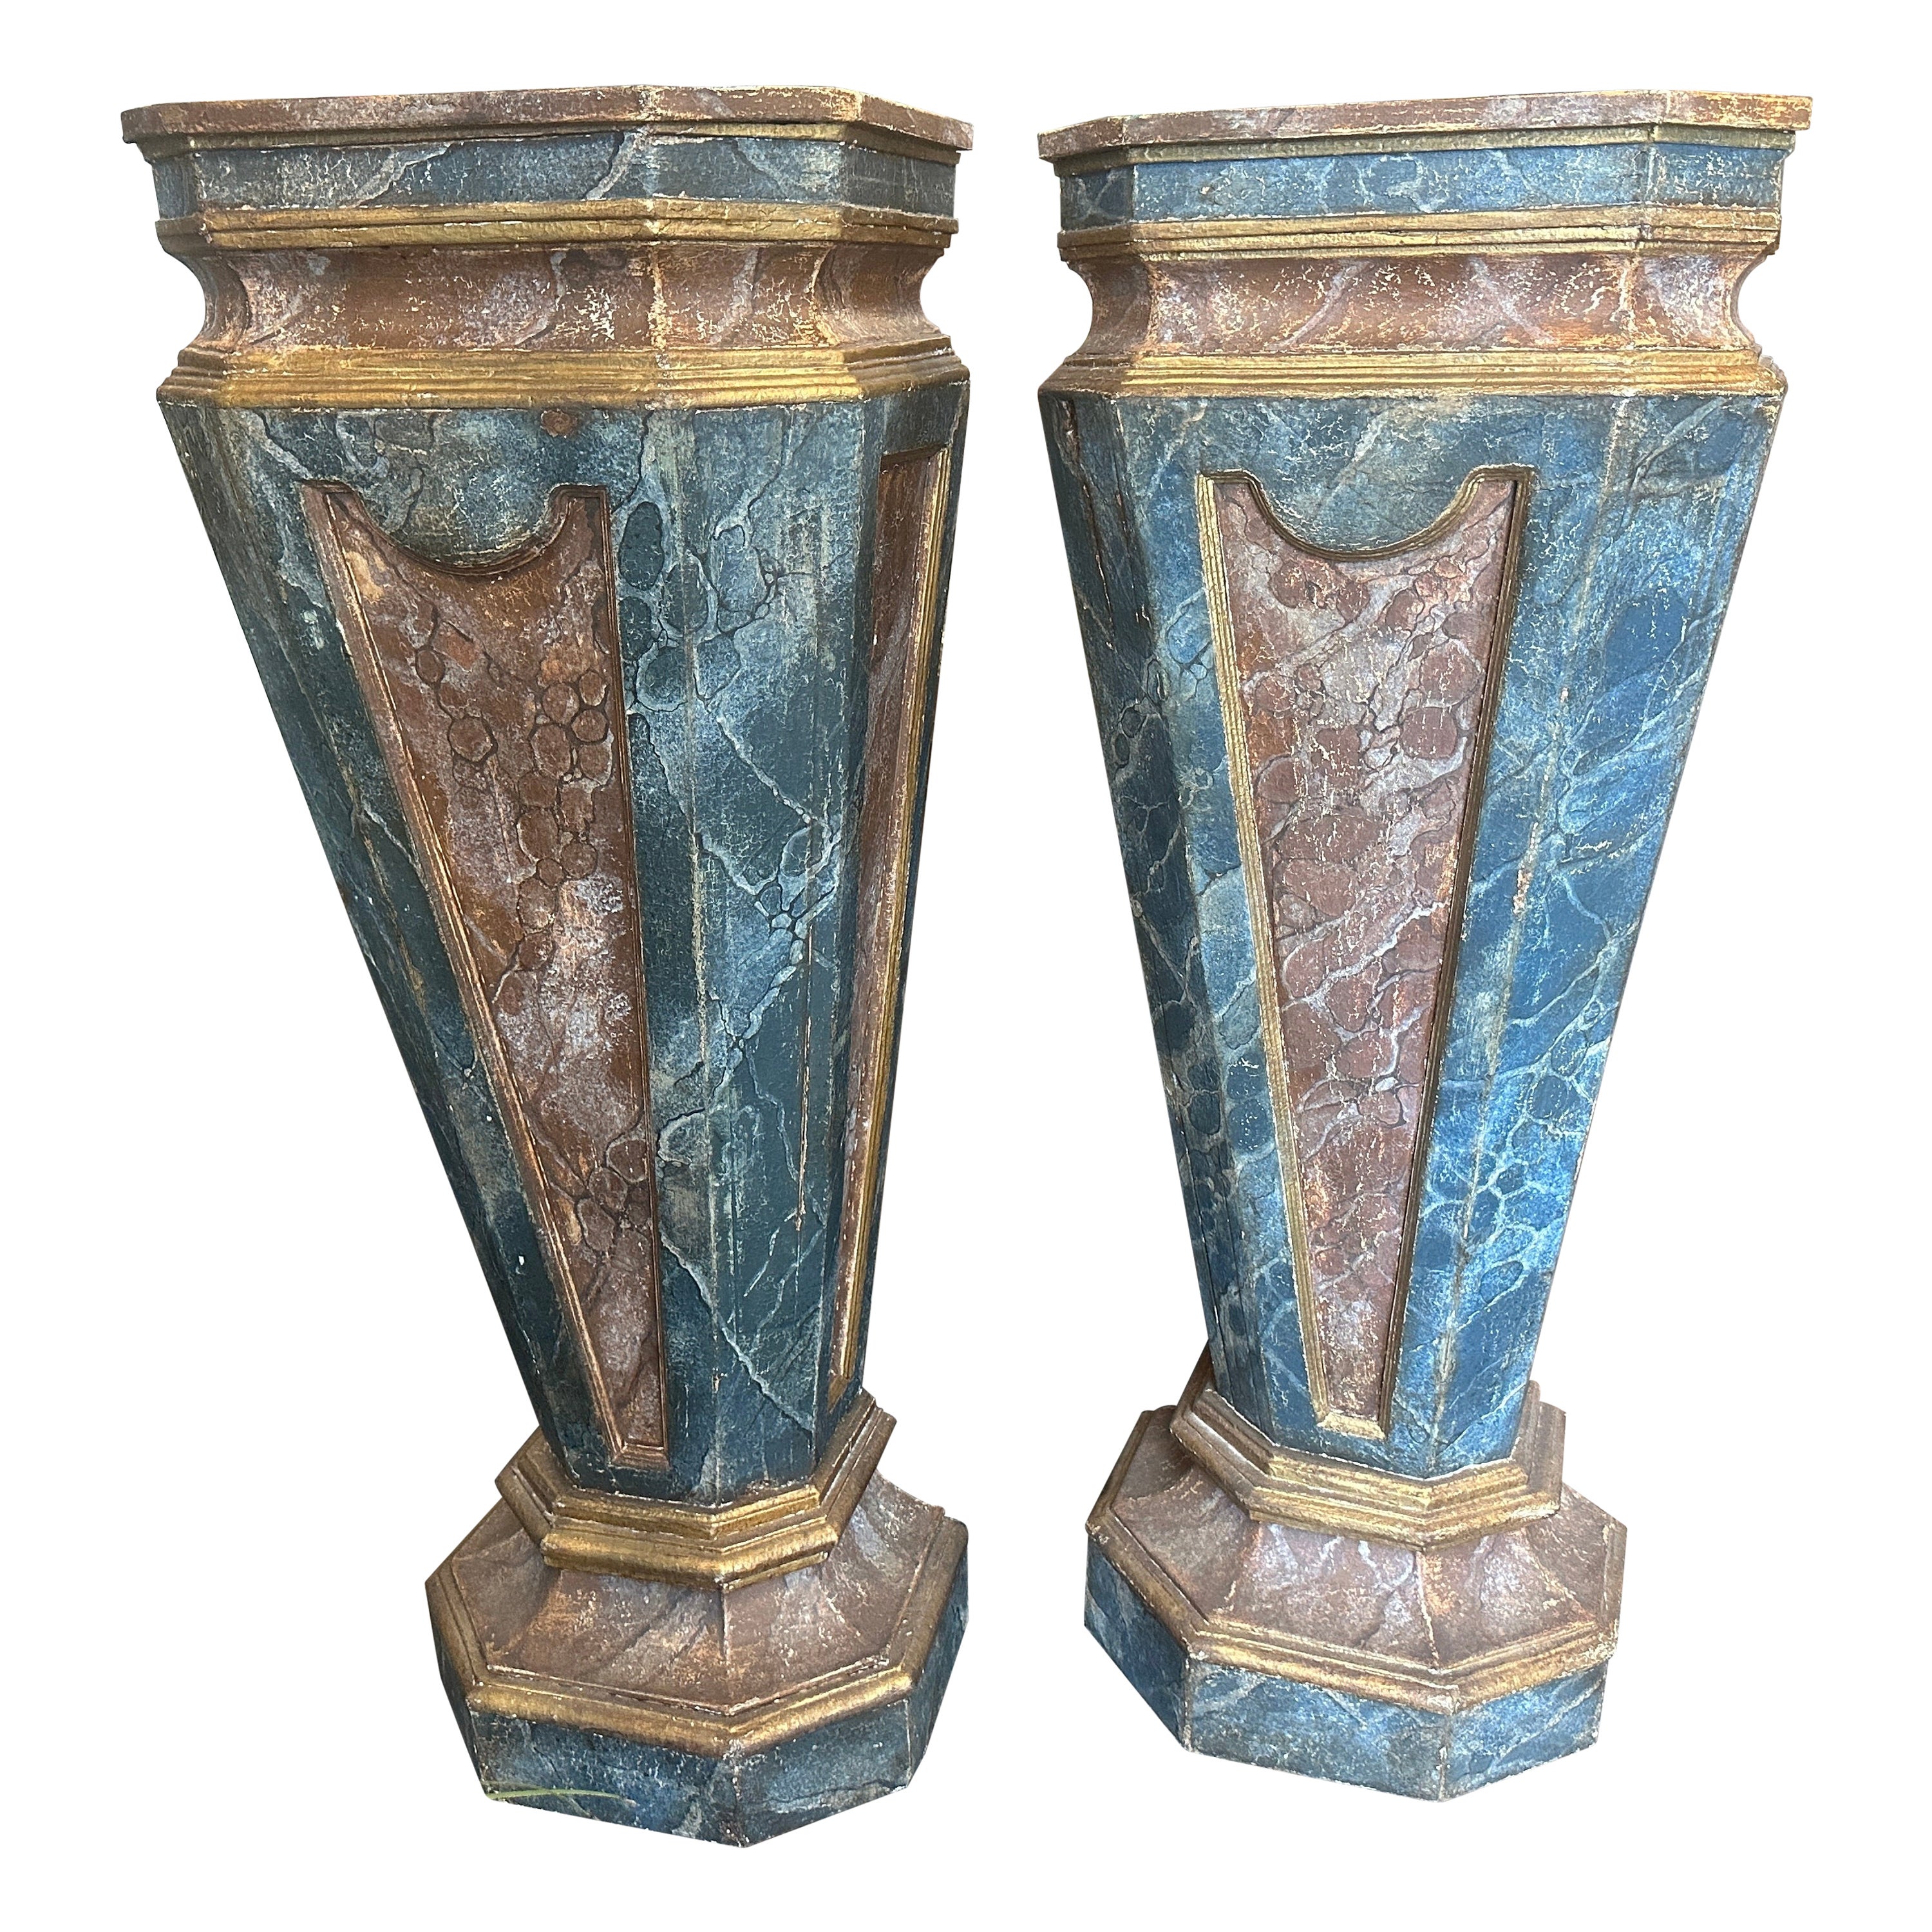 Deux colonnes en bois laqué de style Louis XVI de la fin du XIXe siècle